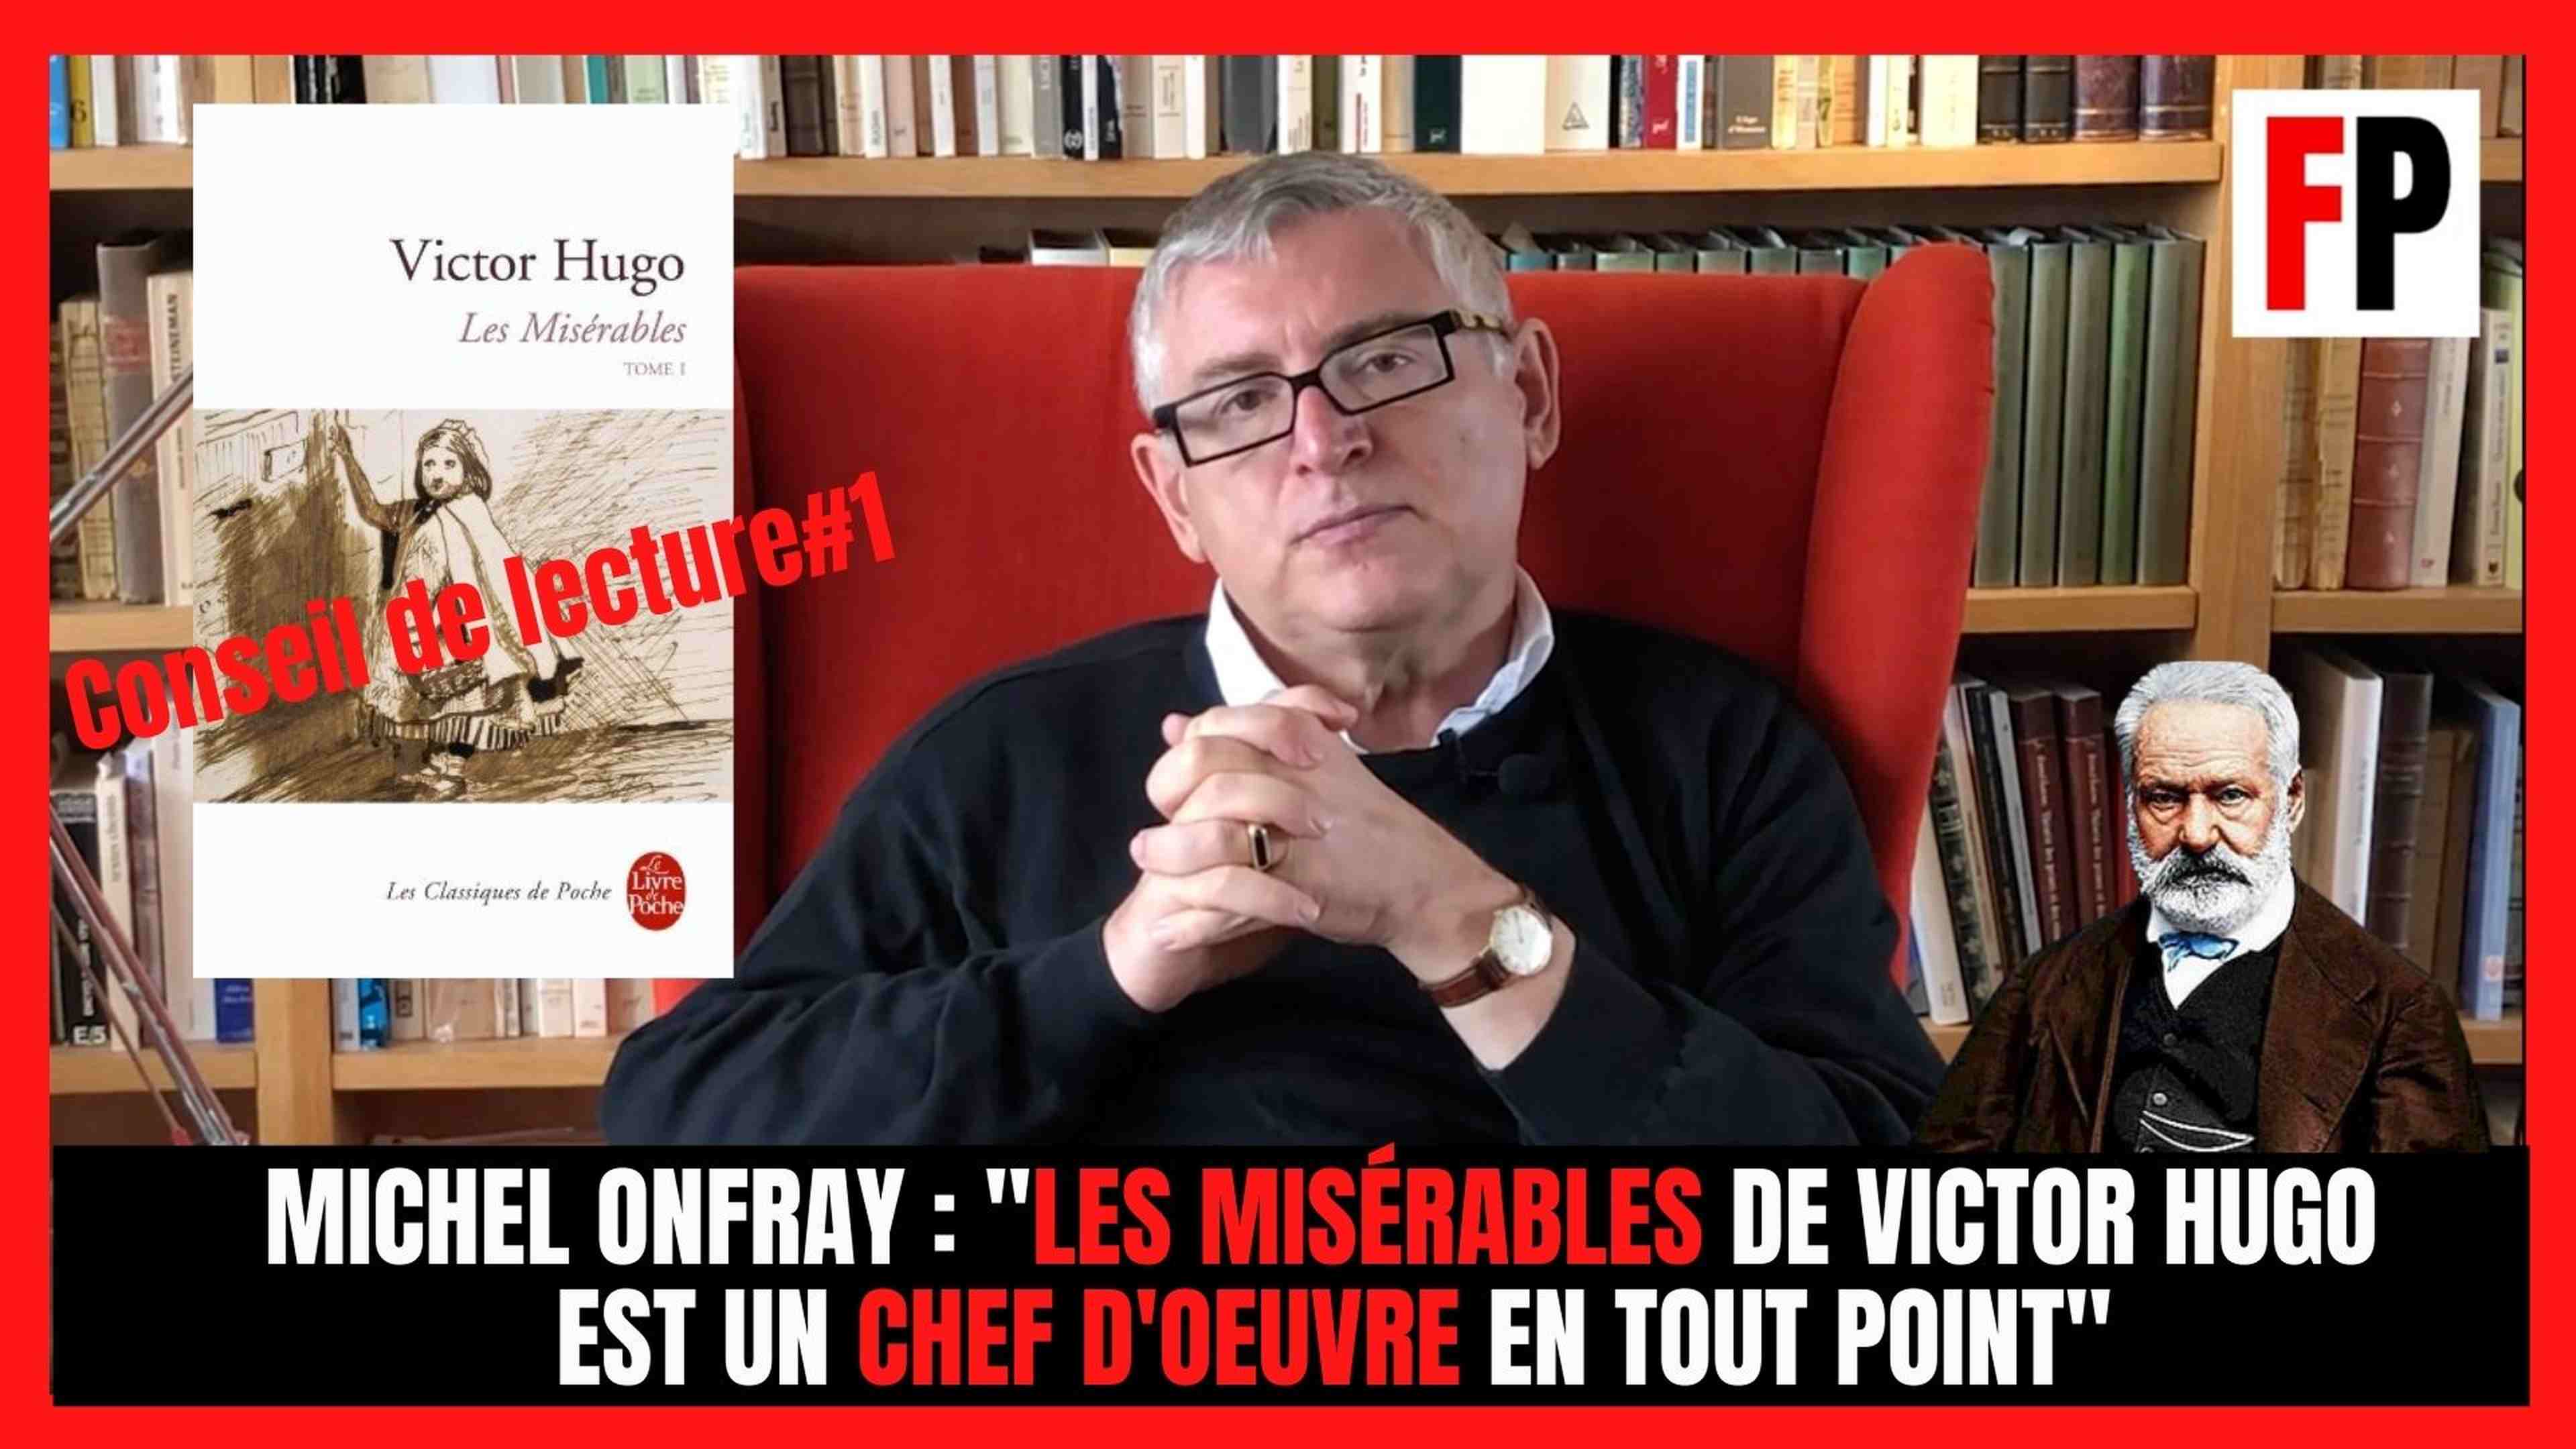 Michel Onfray : "Les Misérables de Victor Hugo est un chef d'oeuvre en tout point"